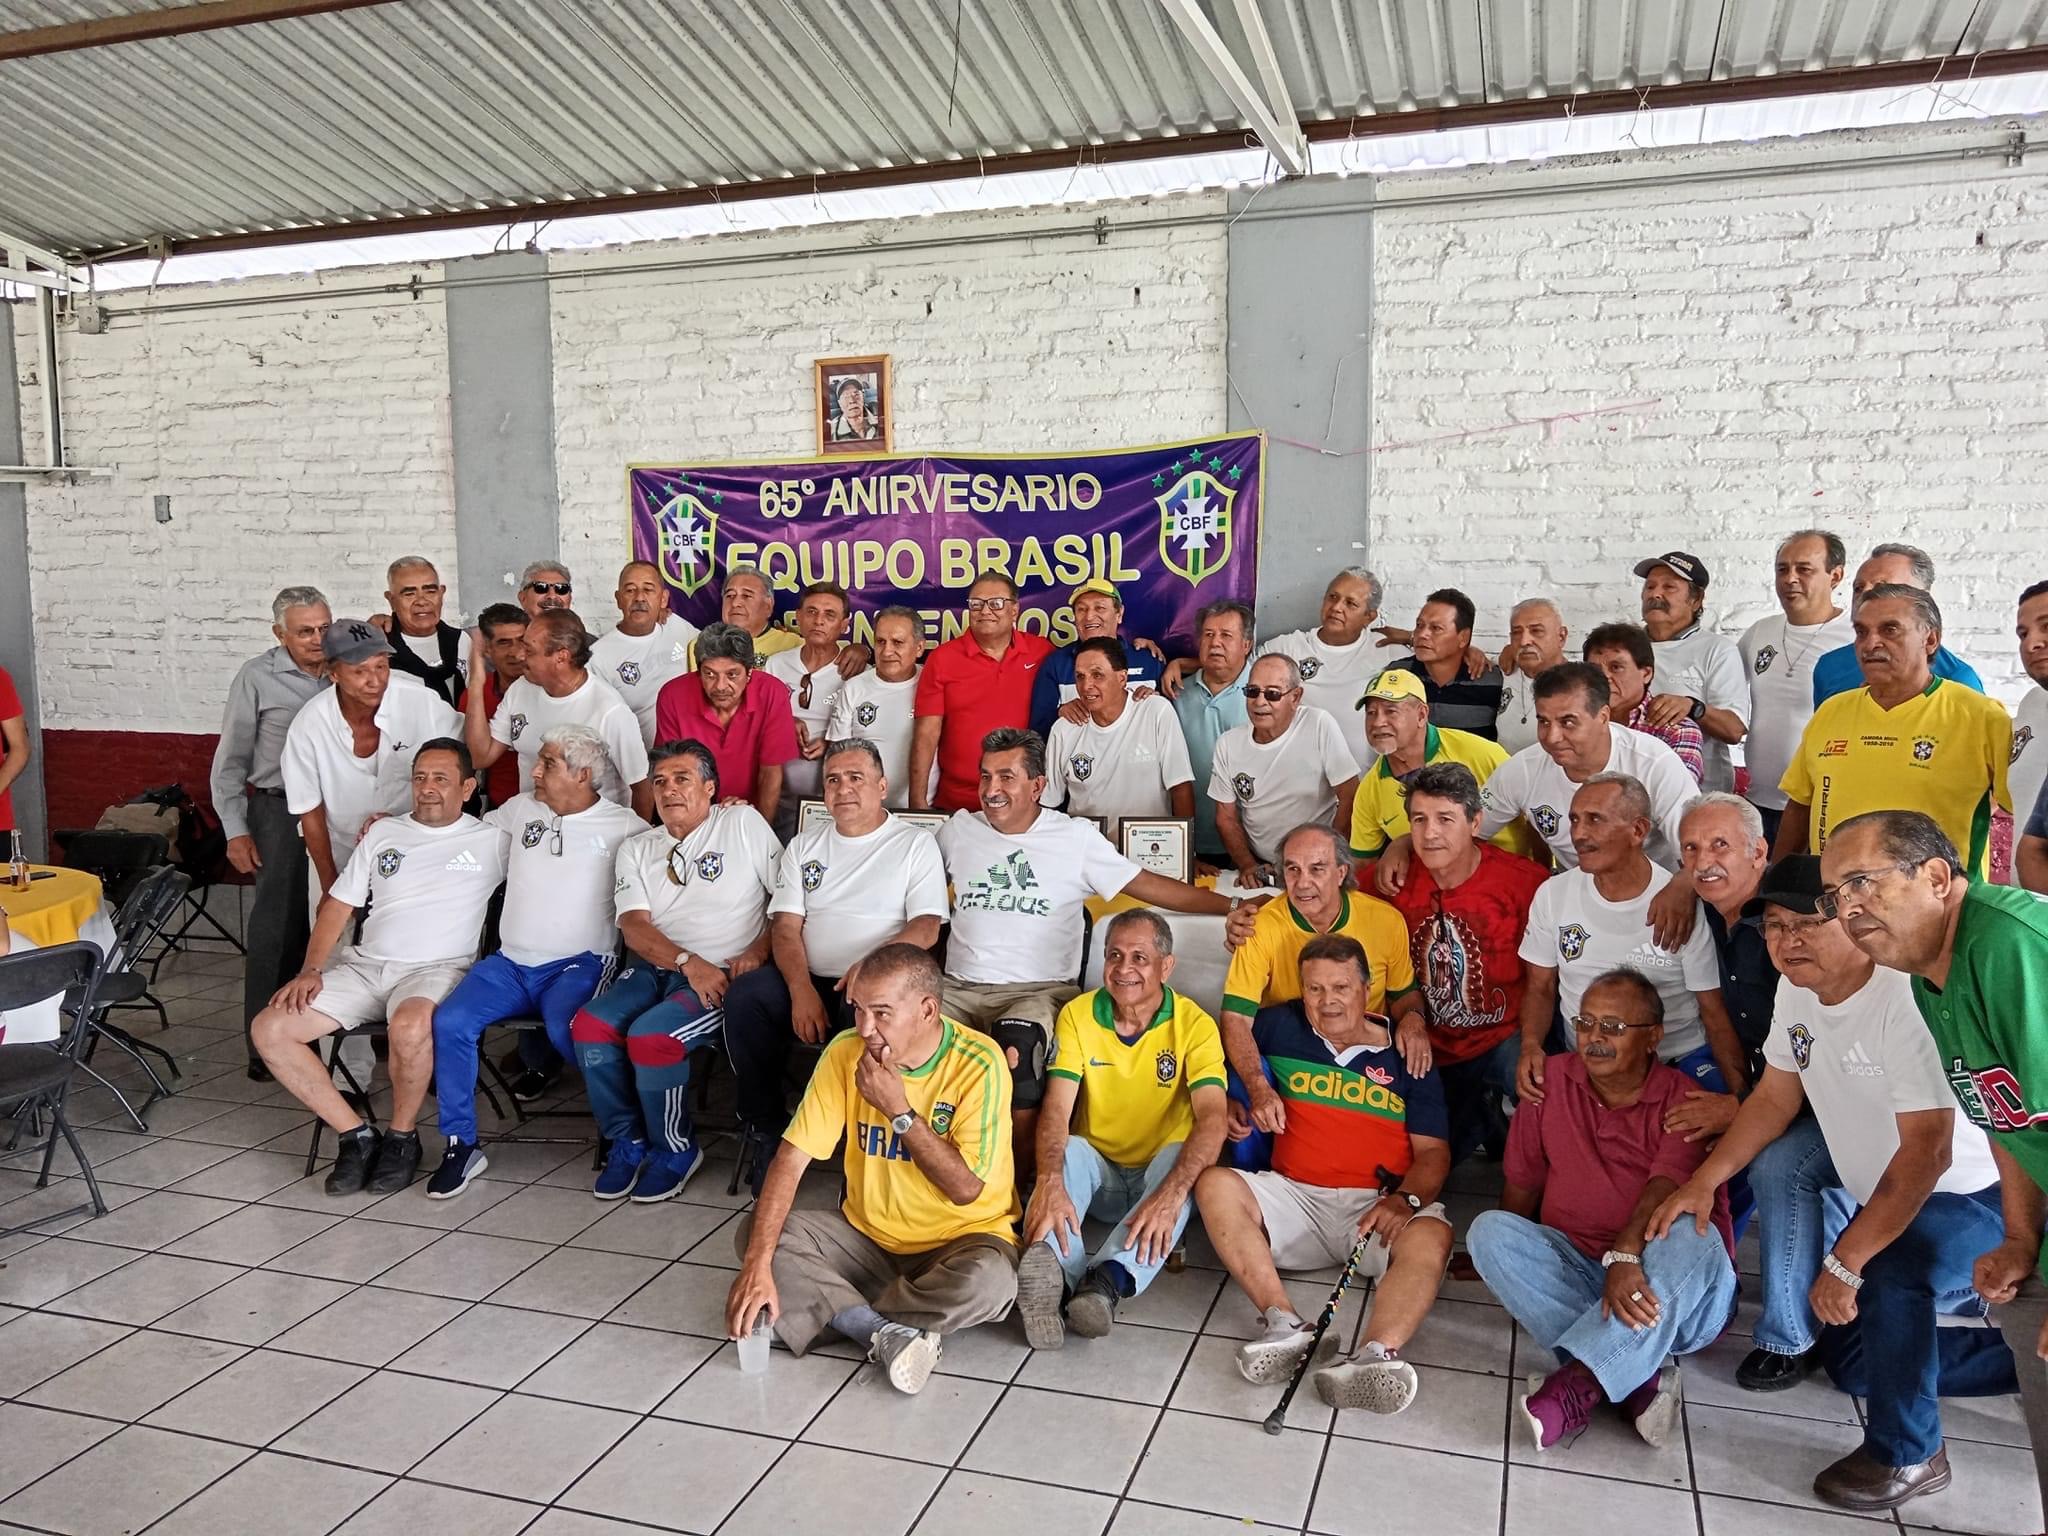 Cumplió 65 años el Club Brasil de Futbol en Zamora